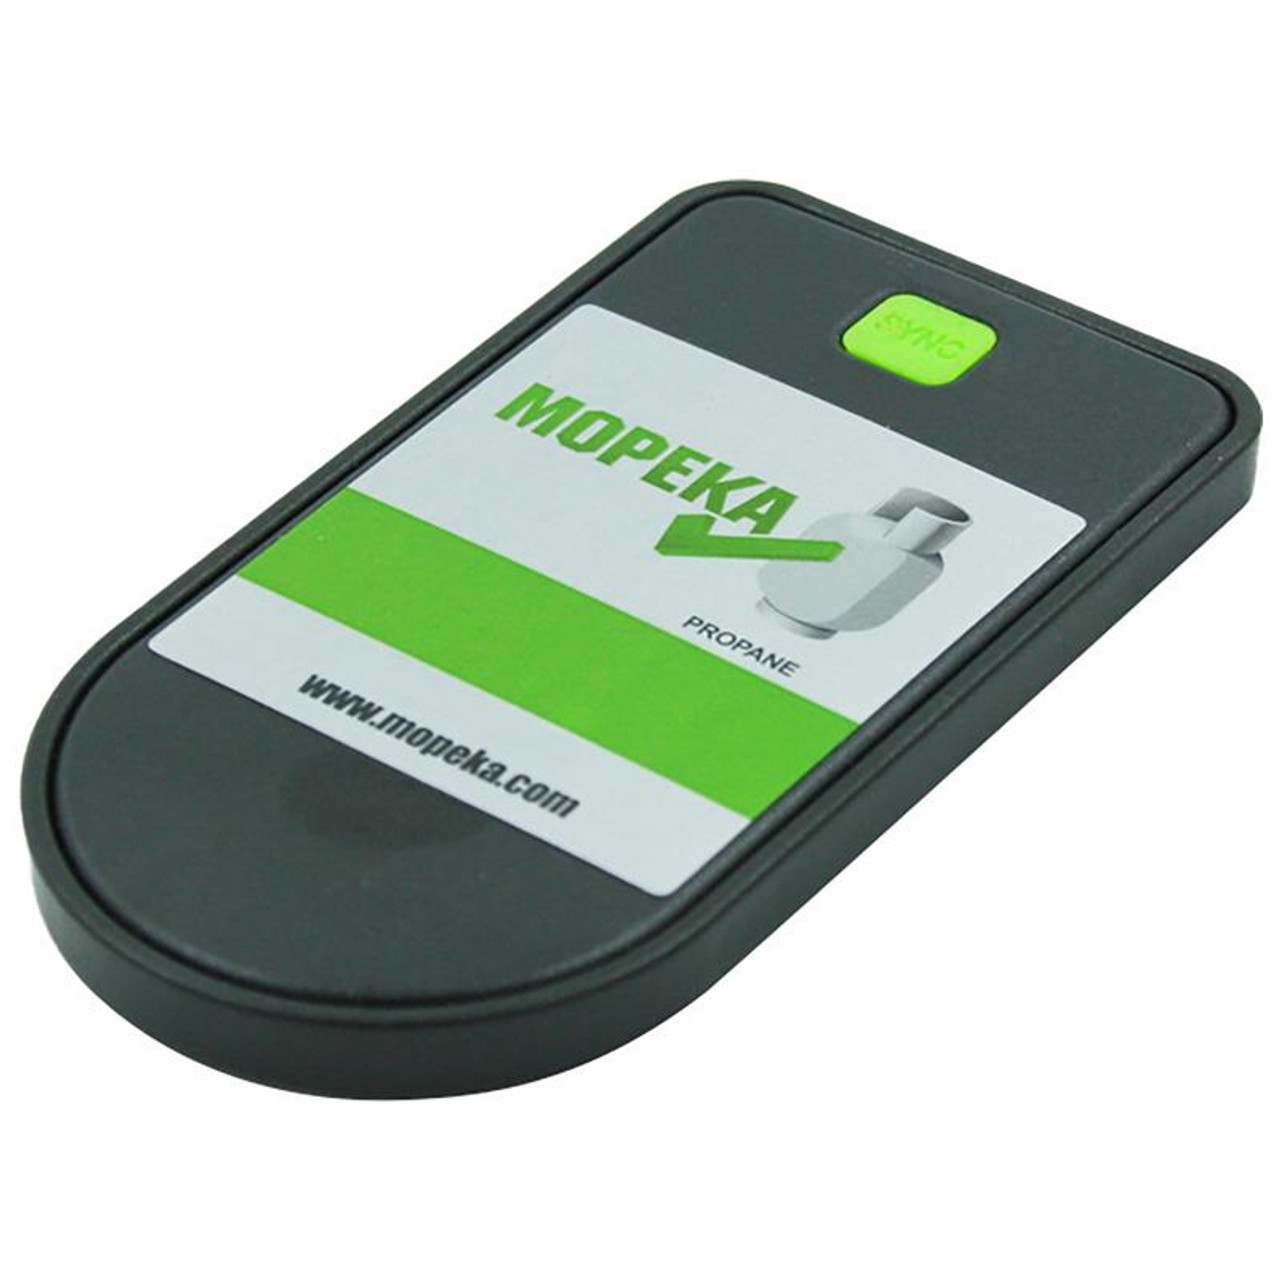 MOPEKA gas cylinder Bluetooth level sensor